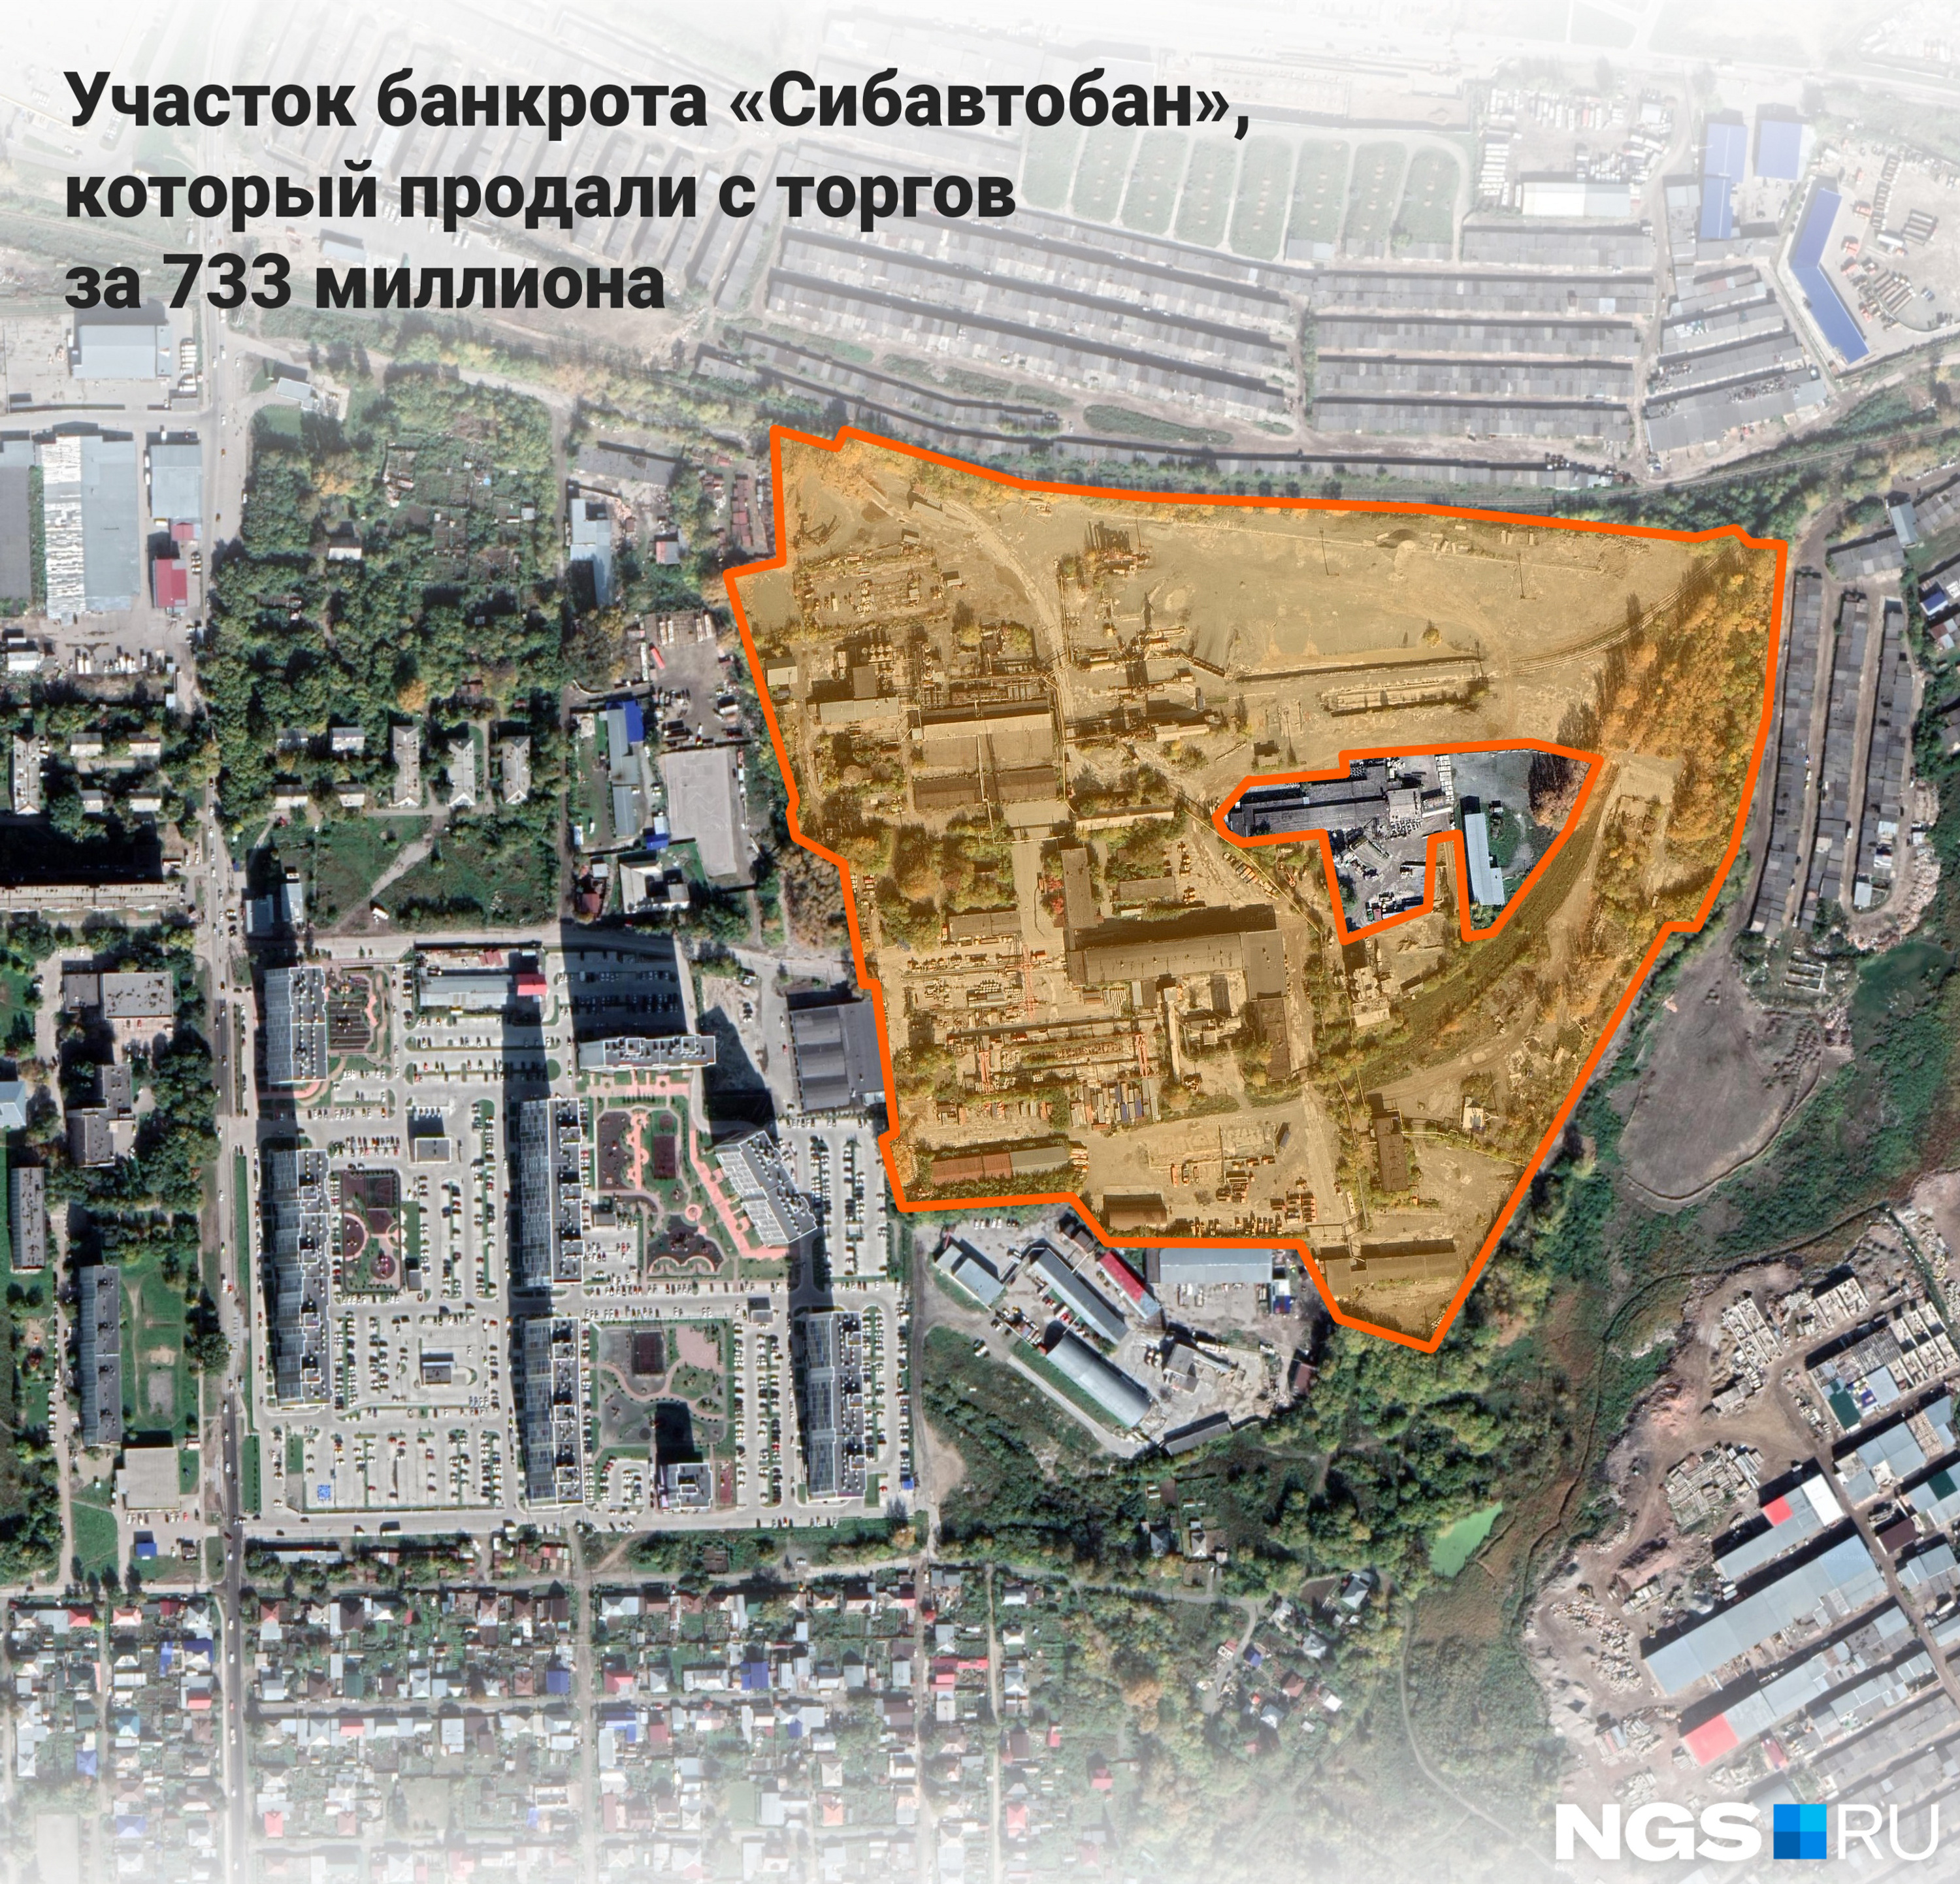 Территория завода находится по соседству с жилым комплексом «На Фадеева» в микрорайоне Северный